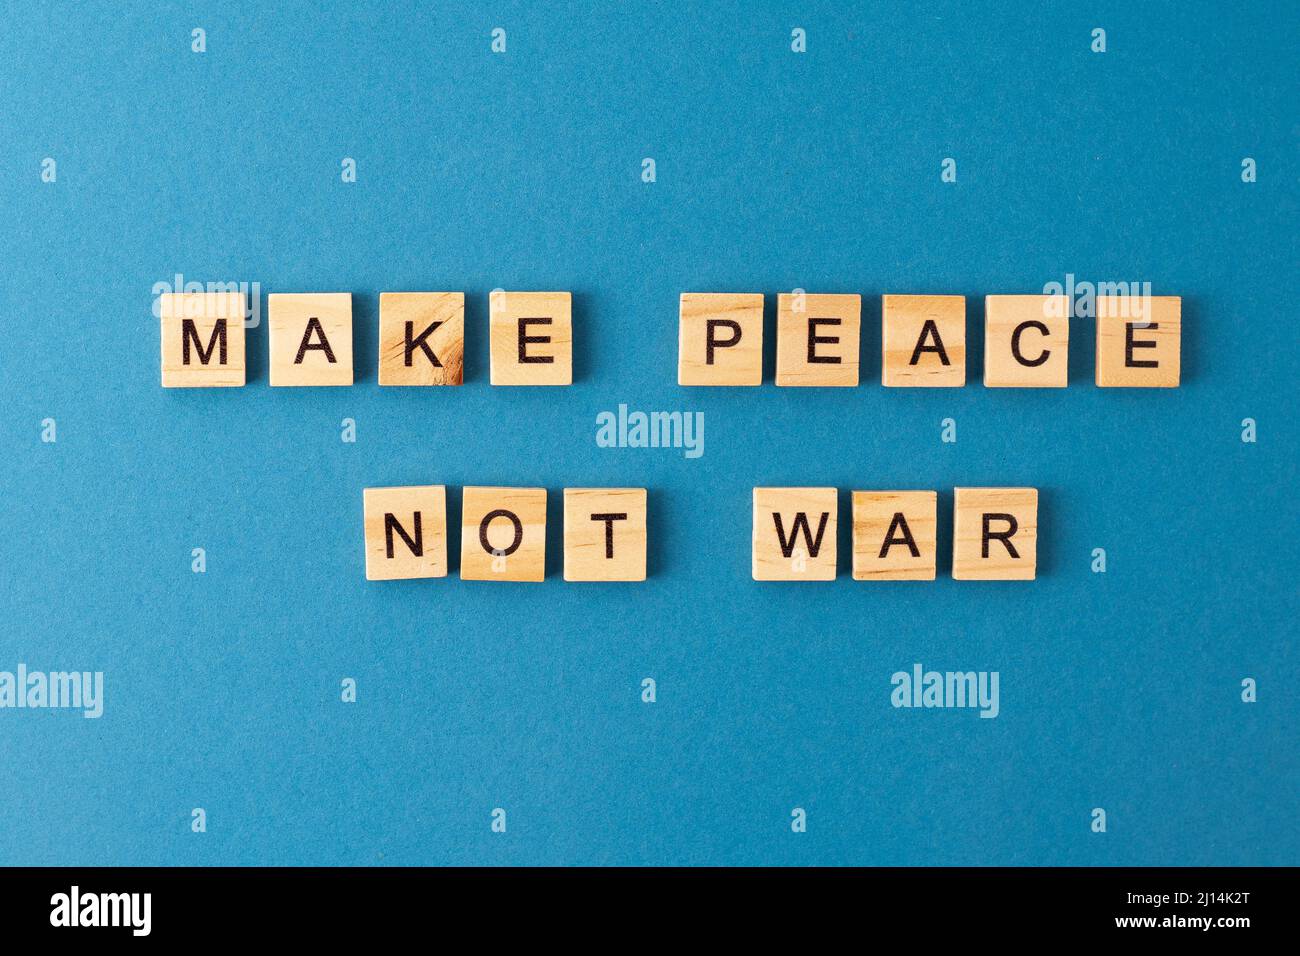 Machen Sie Frieden, nicht Krieg Hintergrund. Satz aus Holzbuchstaben. Wörter aus der Draufsicht. Die Sätze sind in Holzbuchstaben ausgelegt. Motivation. Stockfoto